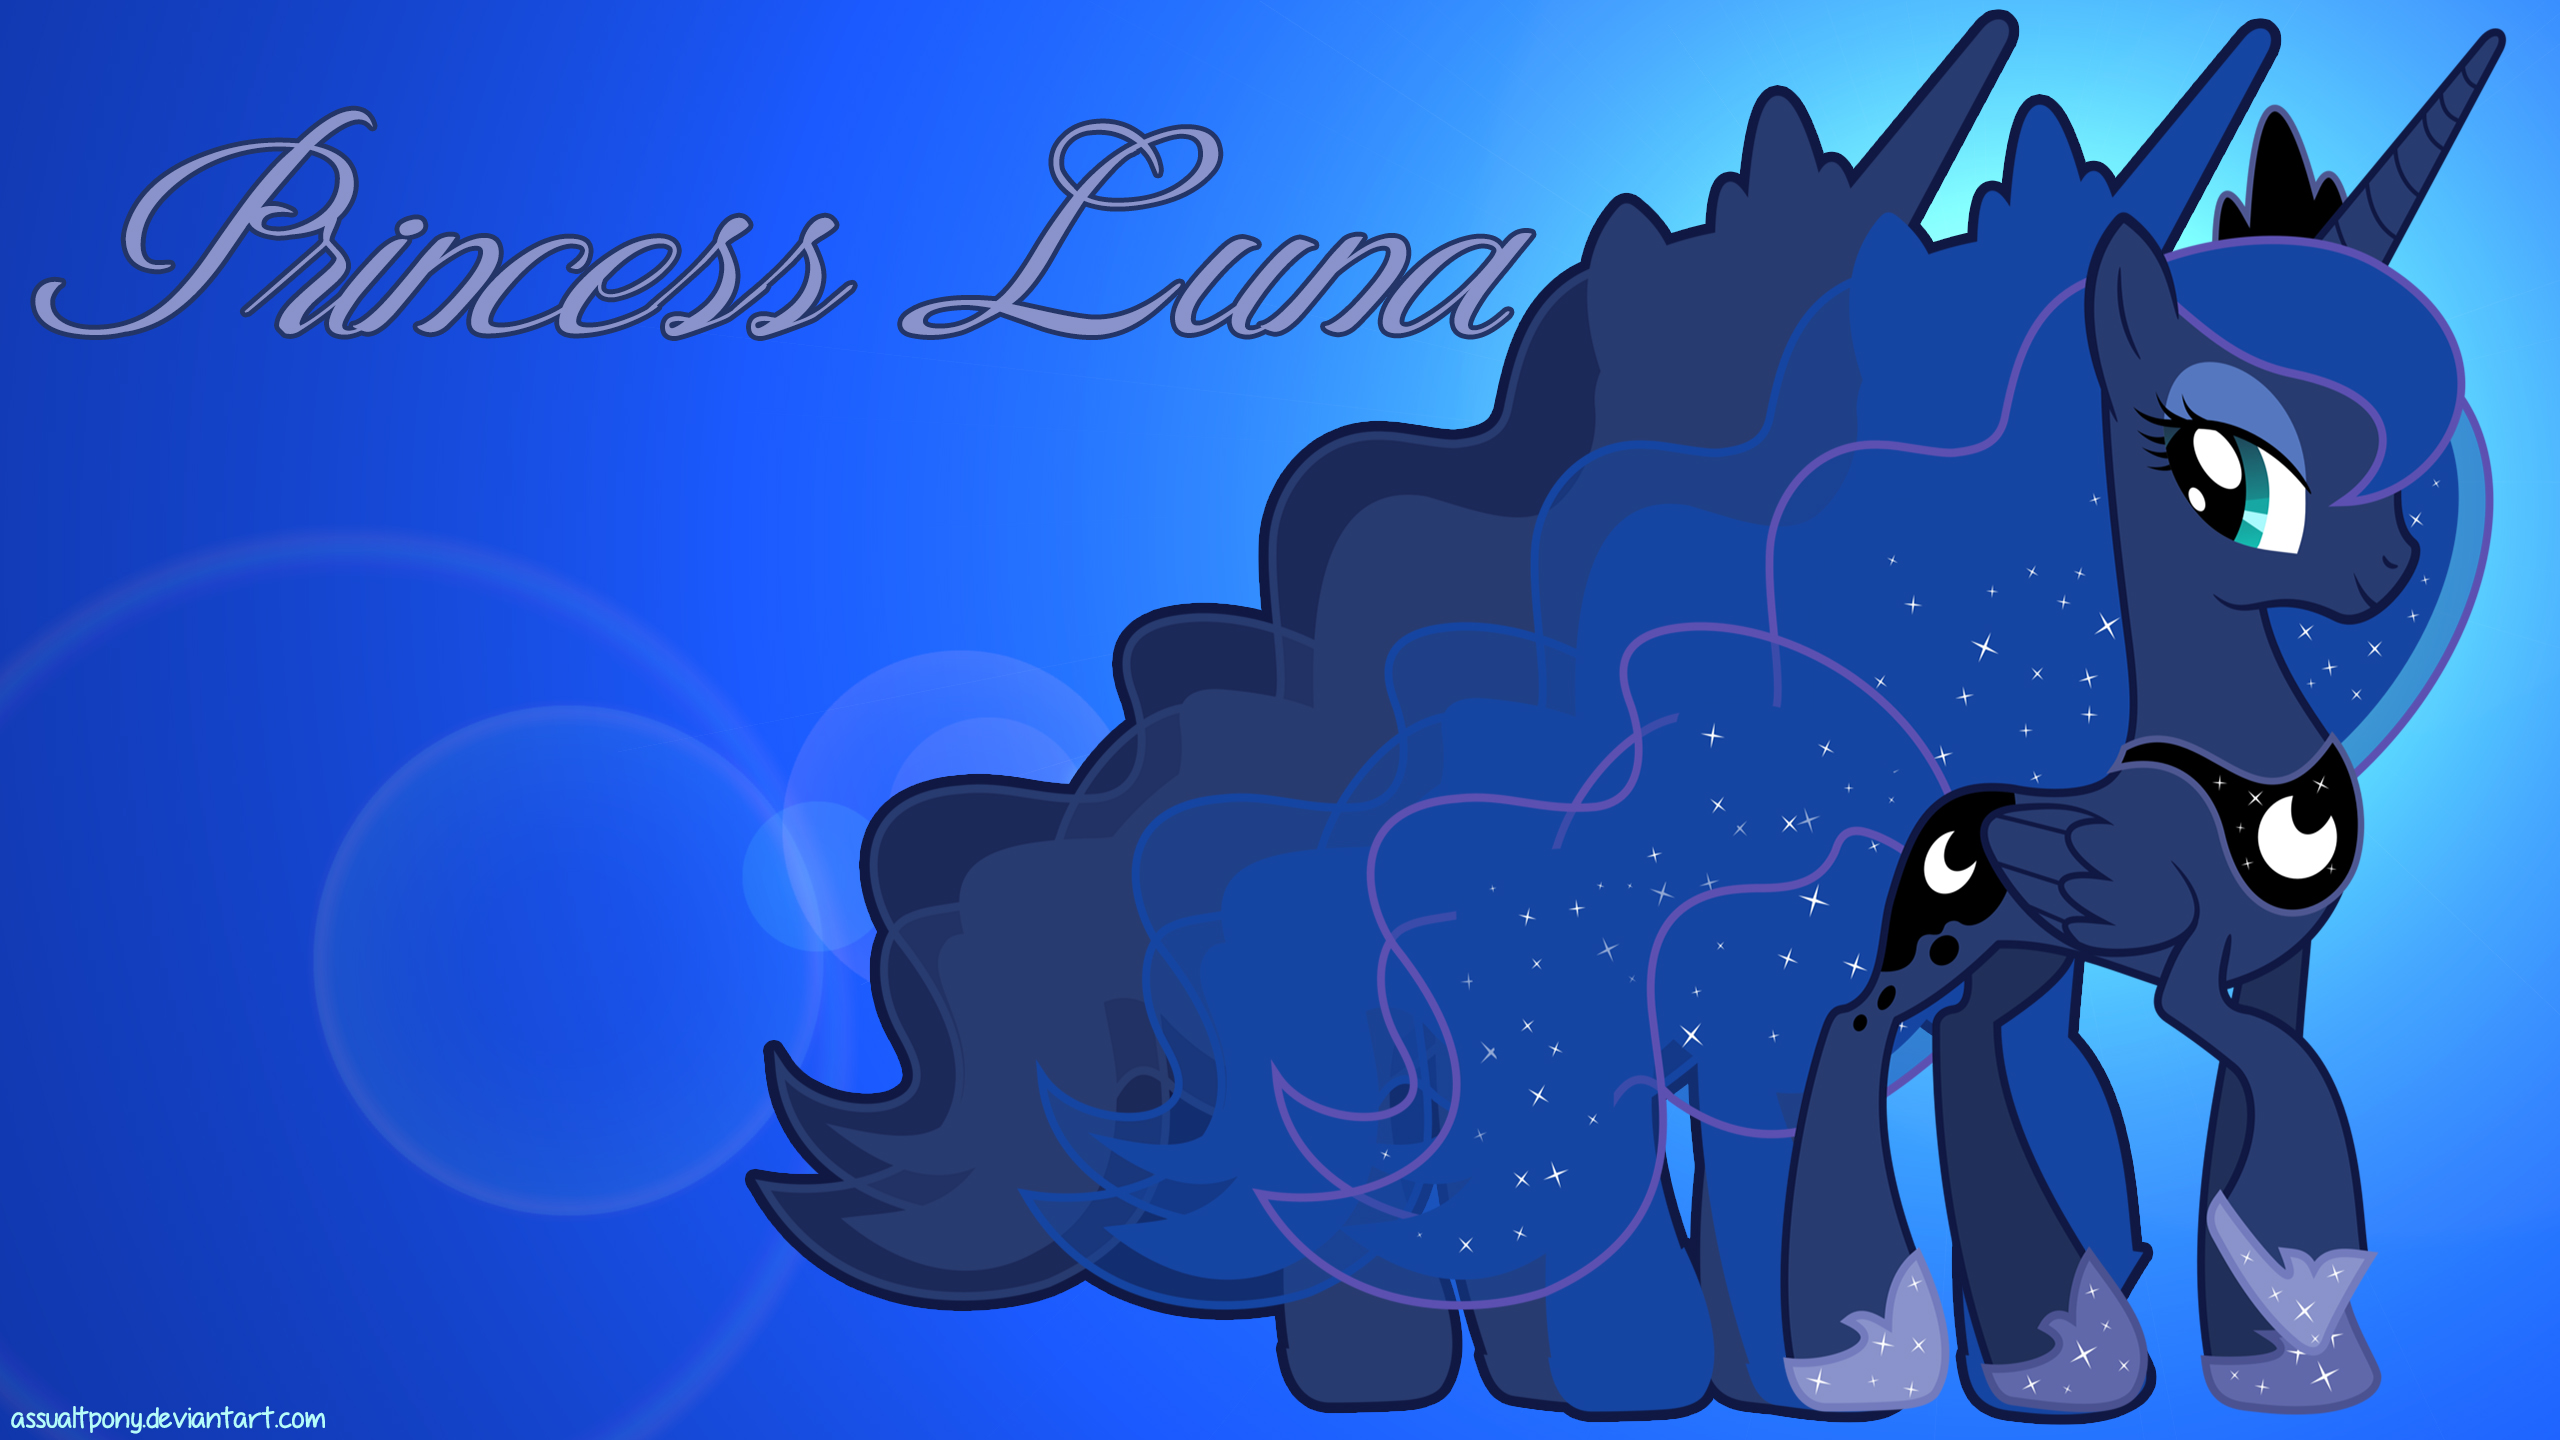 Princess Luna Wallpaper